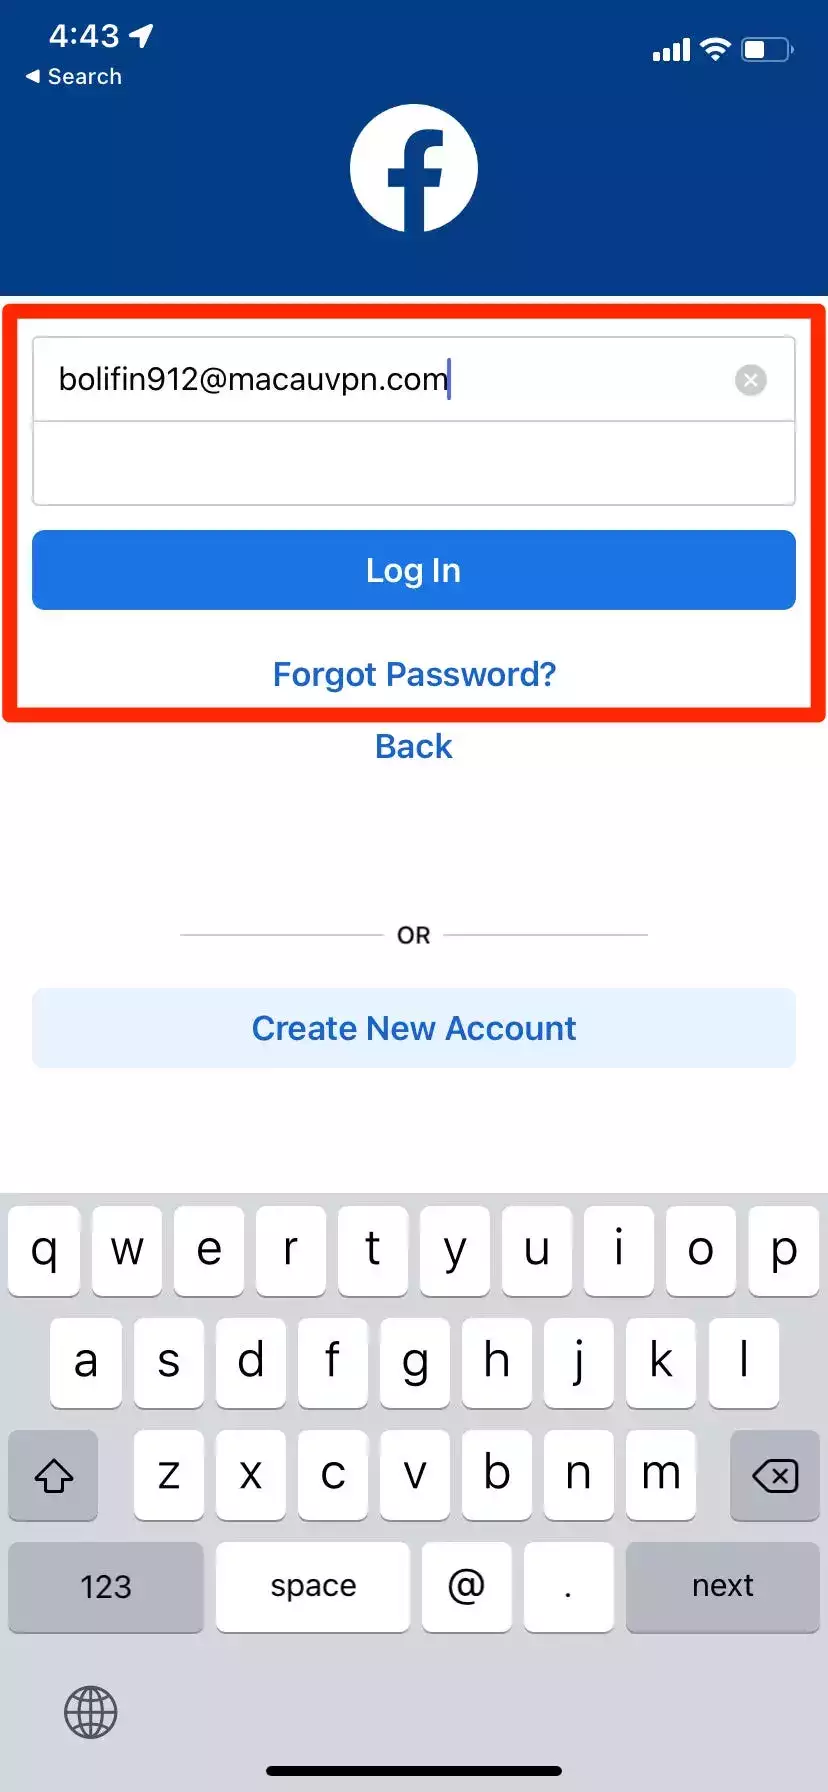 即使您不知道密码，如何在计算机或移动设备上登录 Facebook